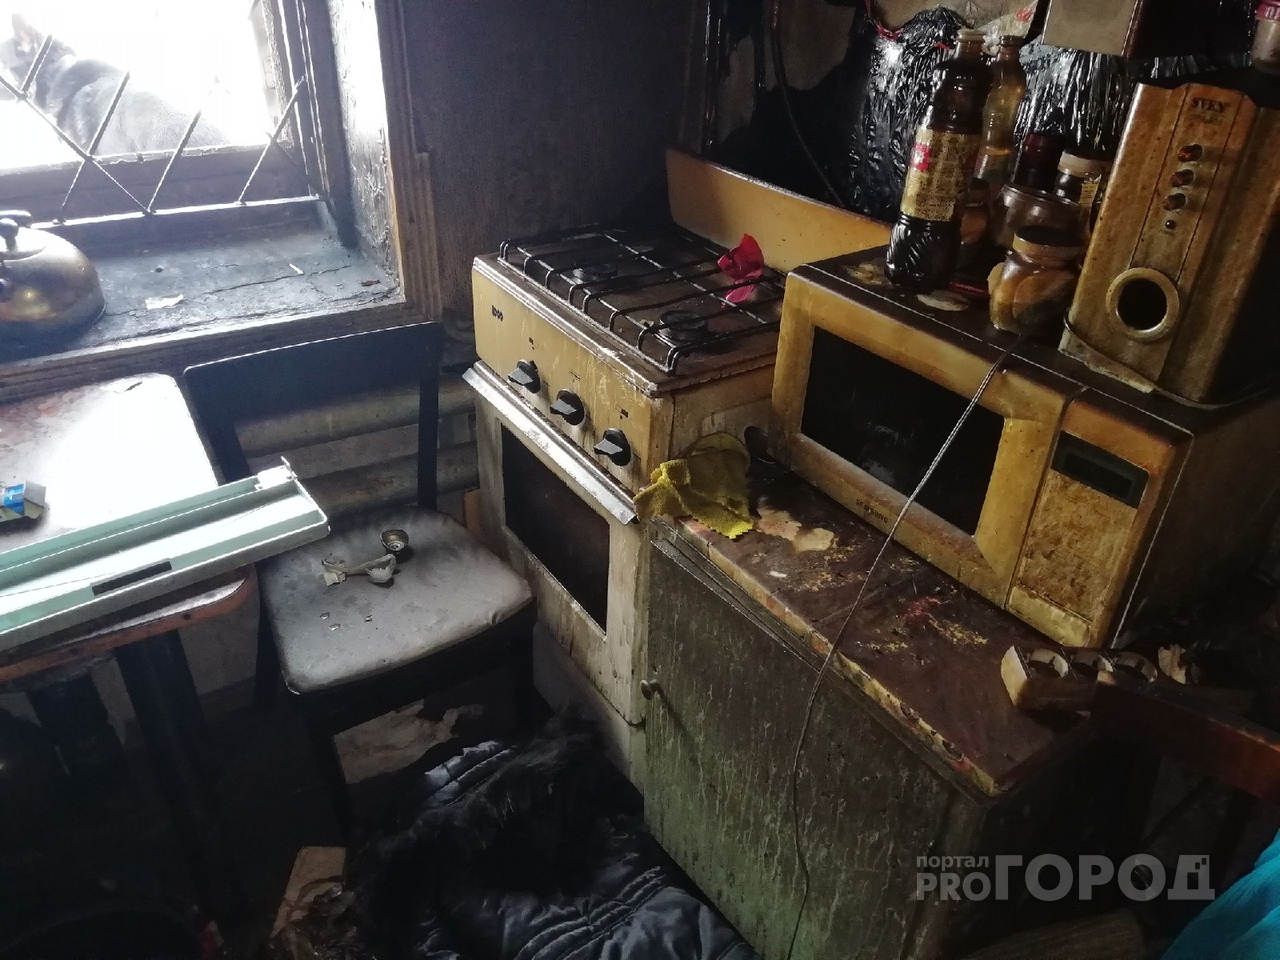 Появились шокирующие подробности про семью, у которой сгорел дом в Йошкар-Оле